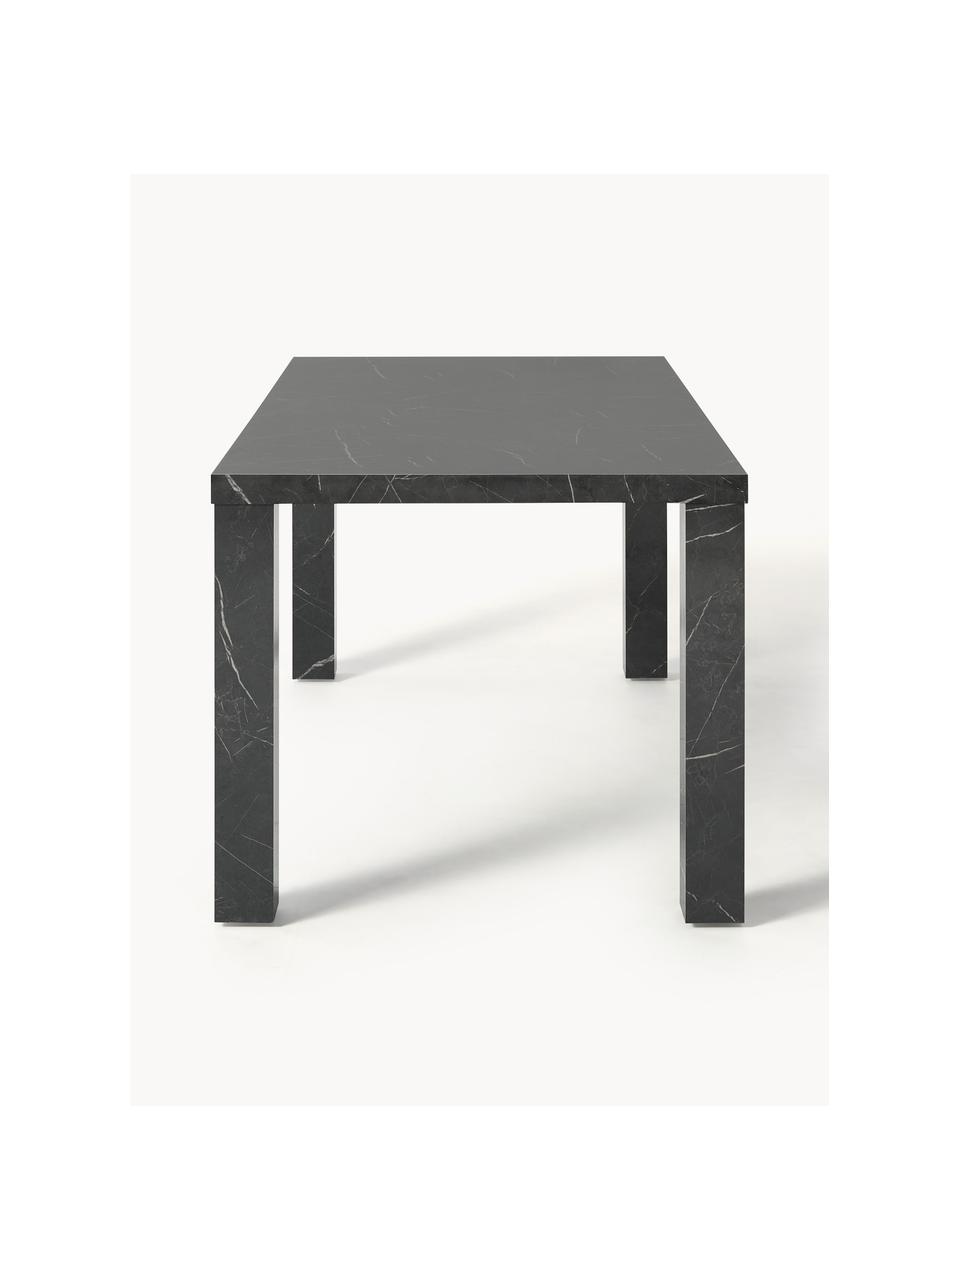 Jídelní stůl v mramorovém vzhledu Carl, 180 x 90 cm, Dřevovláknitá deska střední hustoty (MDF), melamin, pokrytá lakovaným papírem v mramorovém vzhledu, Černý mramorový vzhled, Š 180 cm, V 90 cm